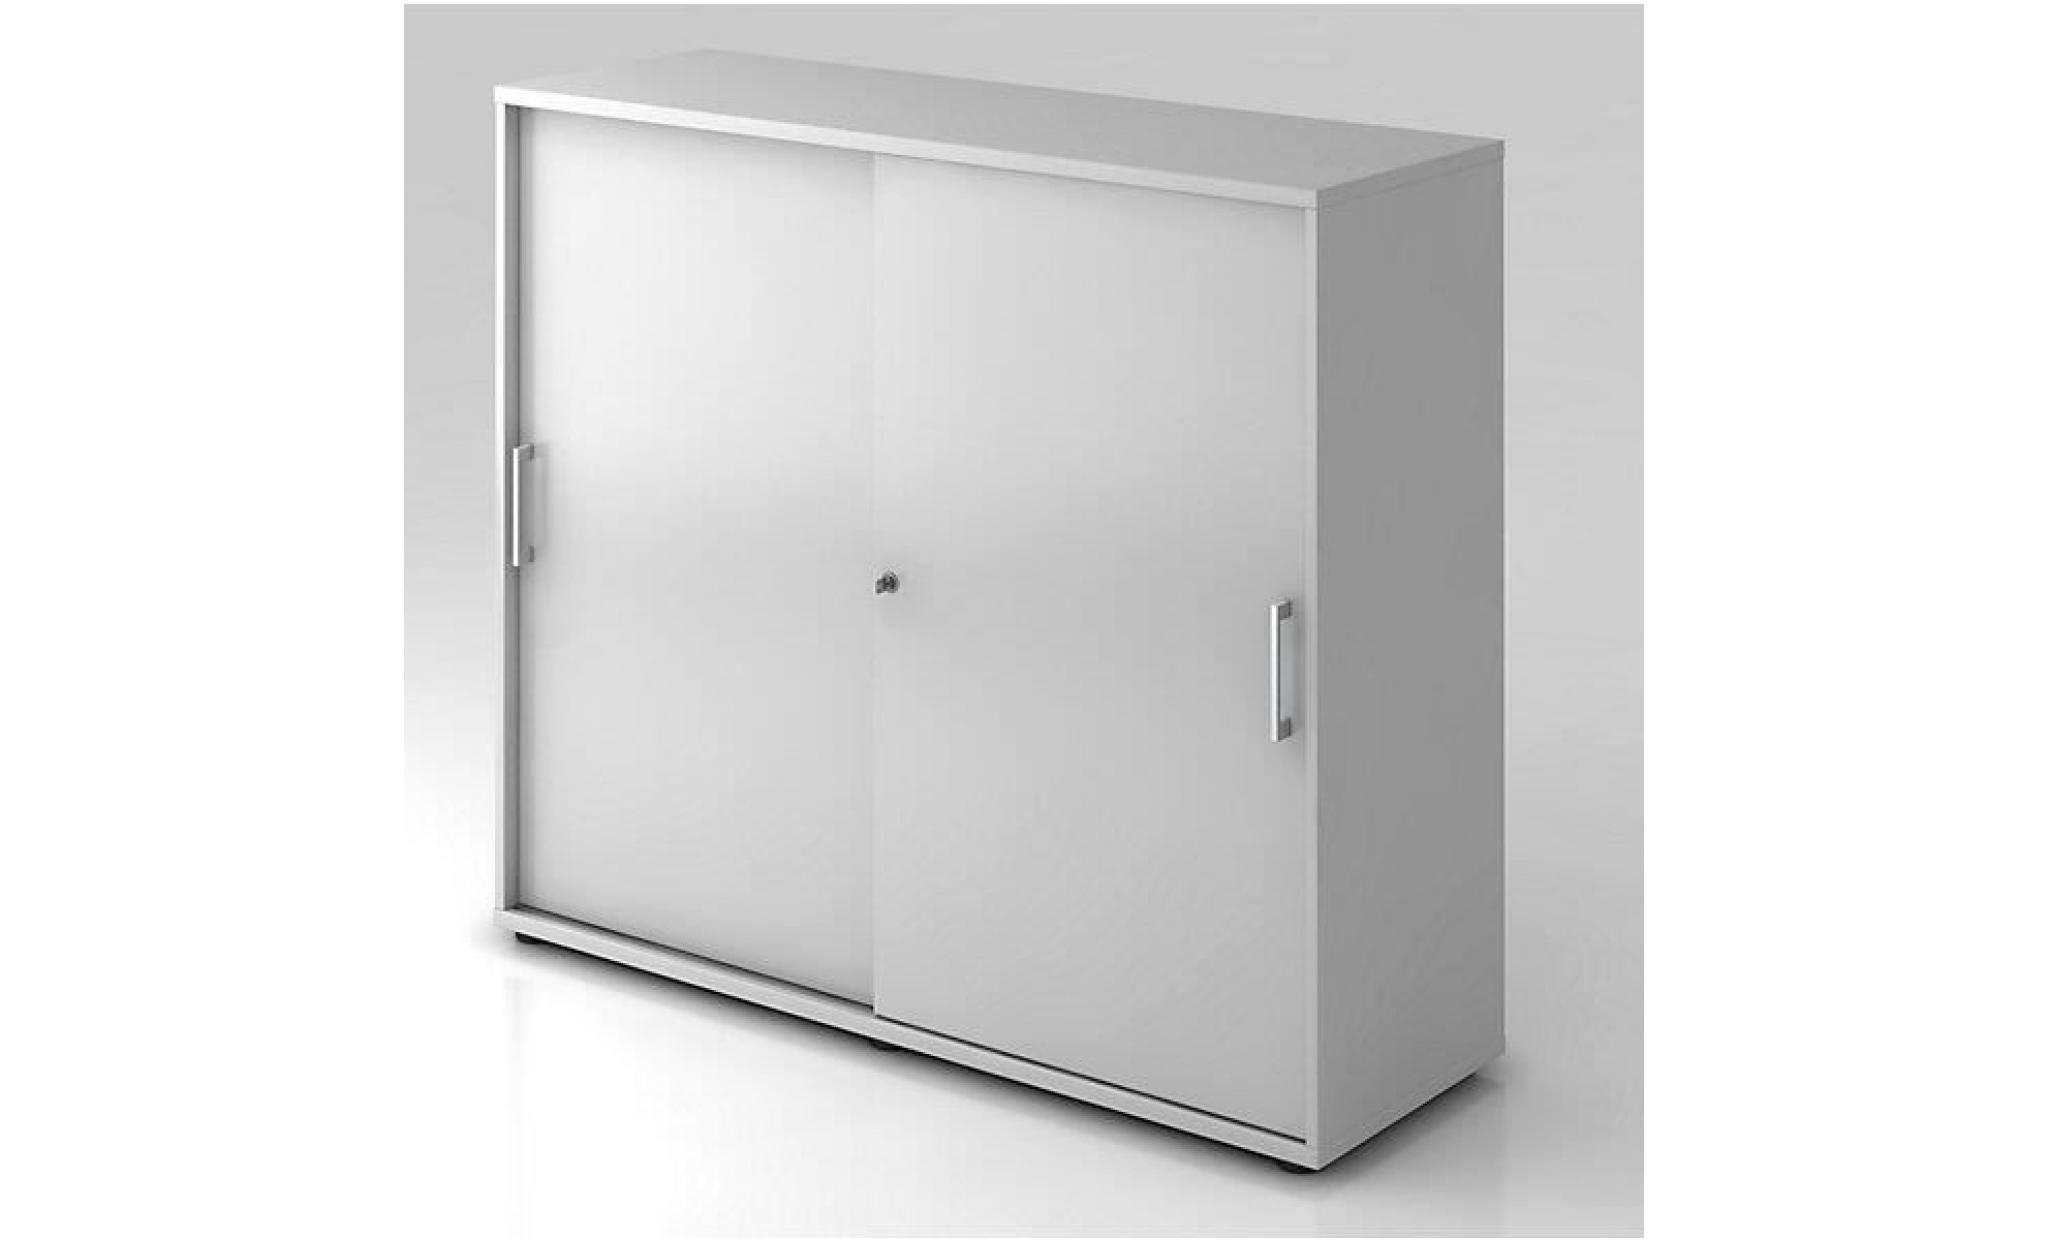 office akktiv armoire à portes coulissantes   hauteur 760 mm, 1 tablette   blanc   armoire de bureau armoire à portes coulissantes